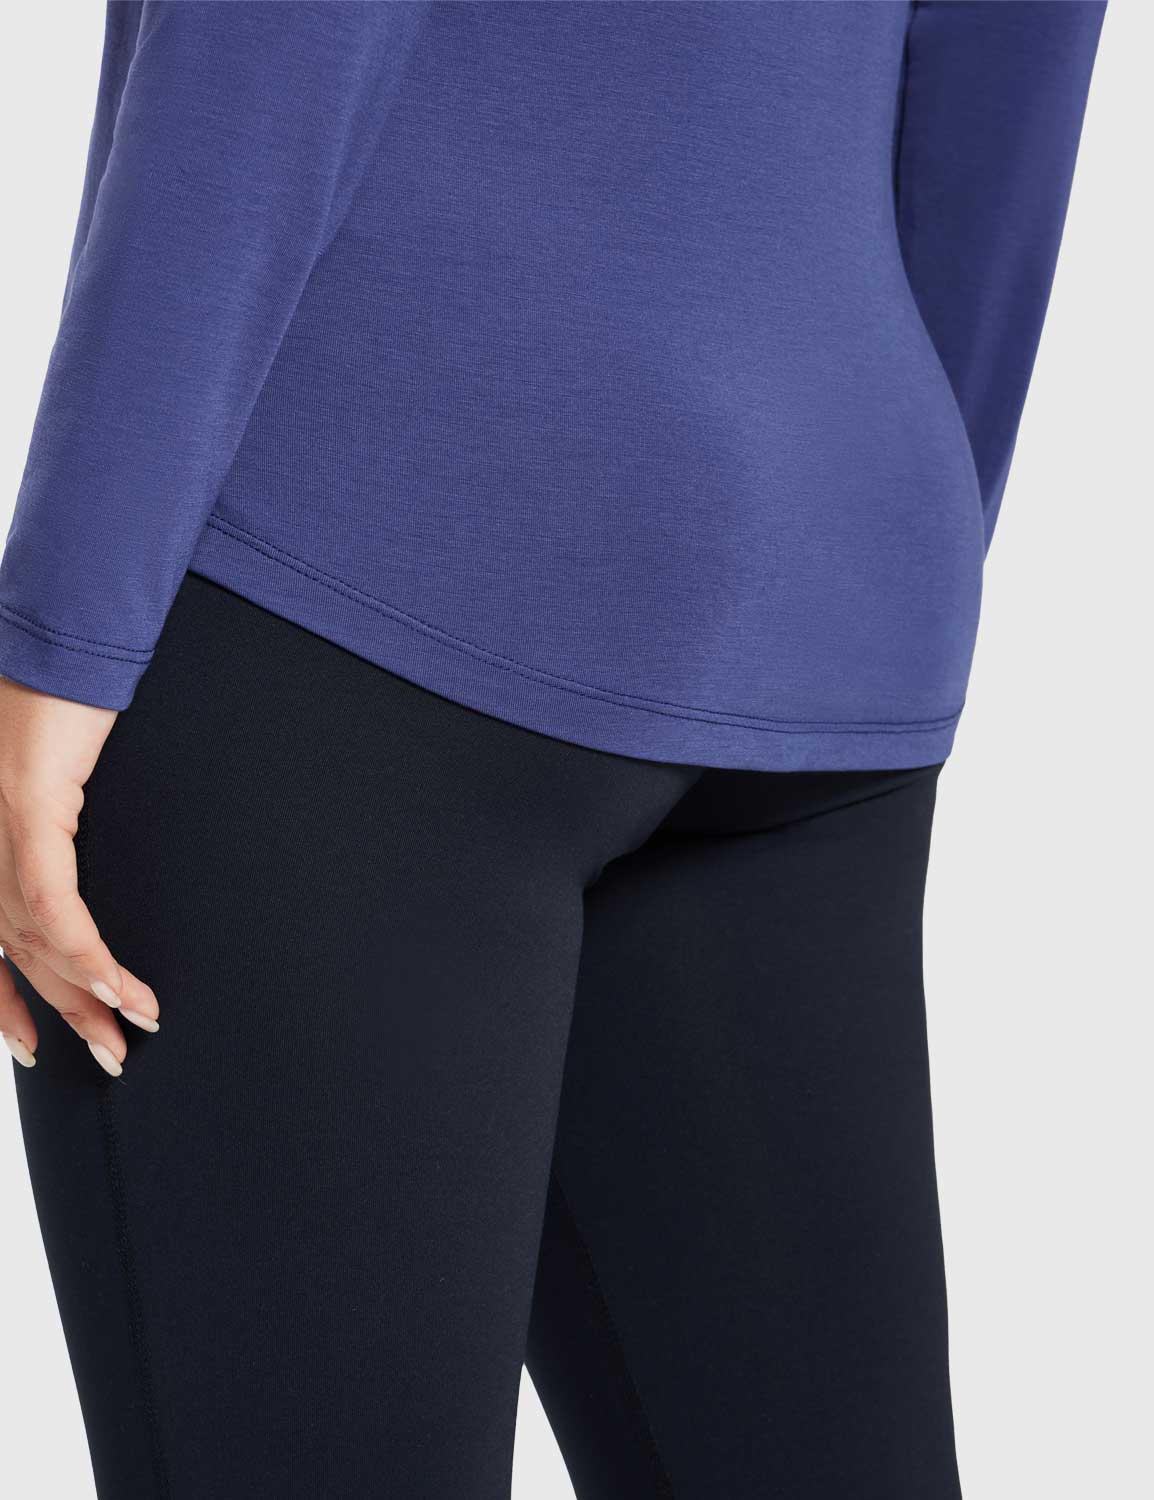 Baleaf Women's Ultra Soft Fall V-Neck Loose Fit Casual T-Shirt Estate Blue Details